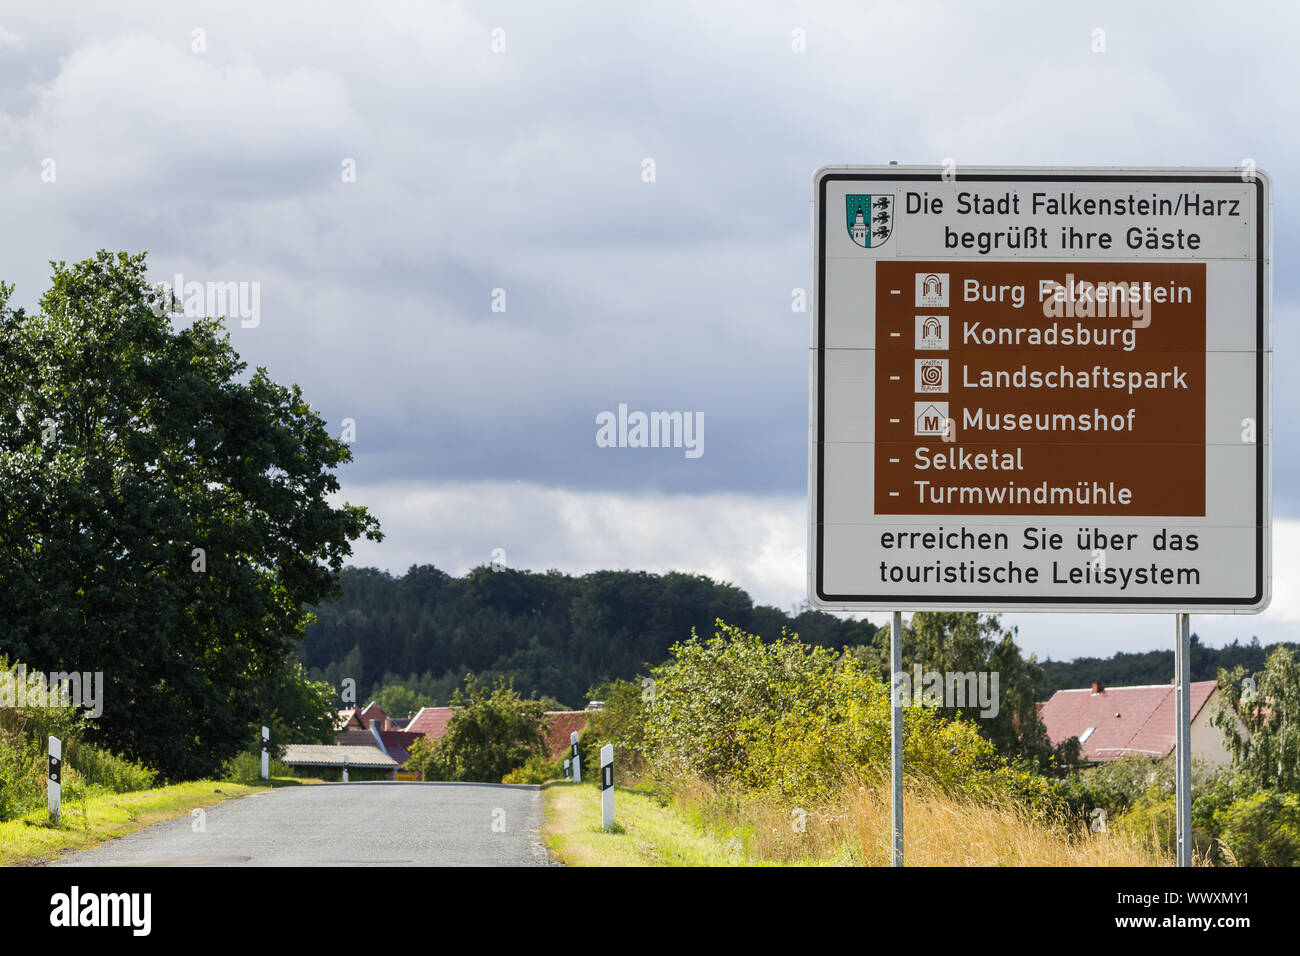 Sistema de guía turística del condado de Harz Foto de stock